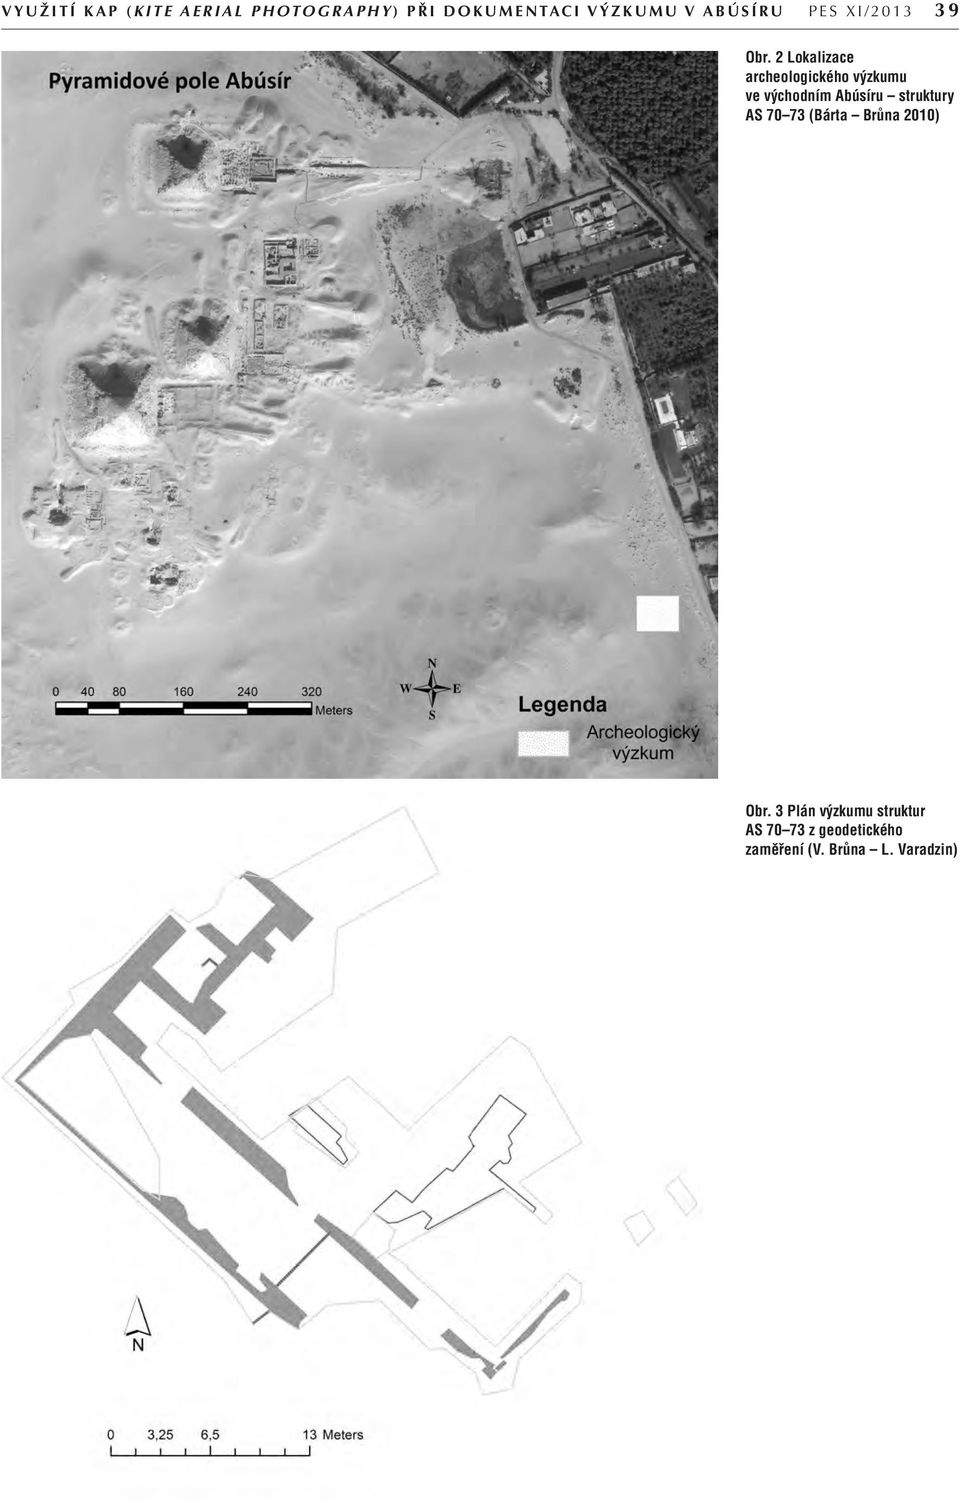 2 Lokalizace archeologického výzkumu ve východním Abúsíru struktury AS 70 73